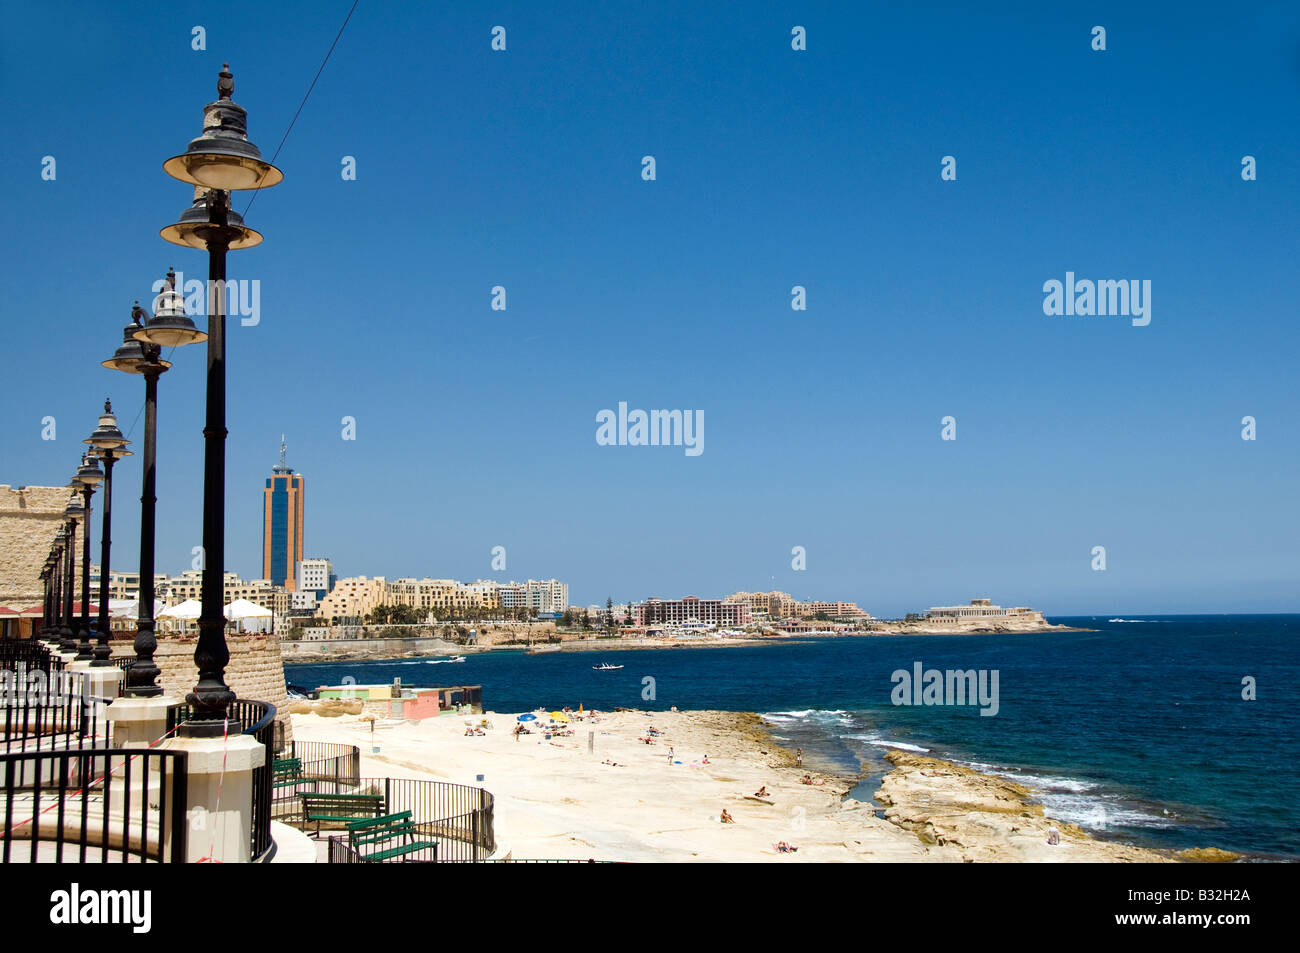 Promenade en bord de plage et sculpté en calcaire de développement hôtel Sliema St Julian s paceville malte mer méditerranée Banque D'Images